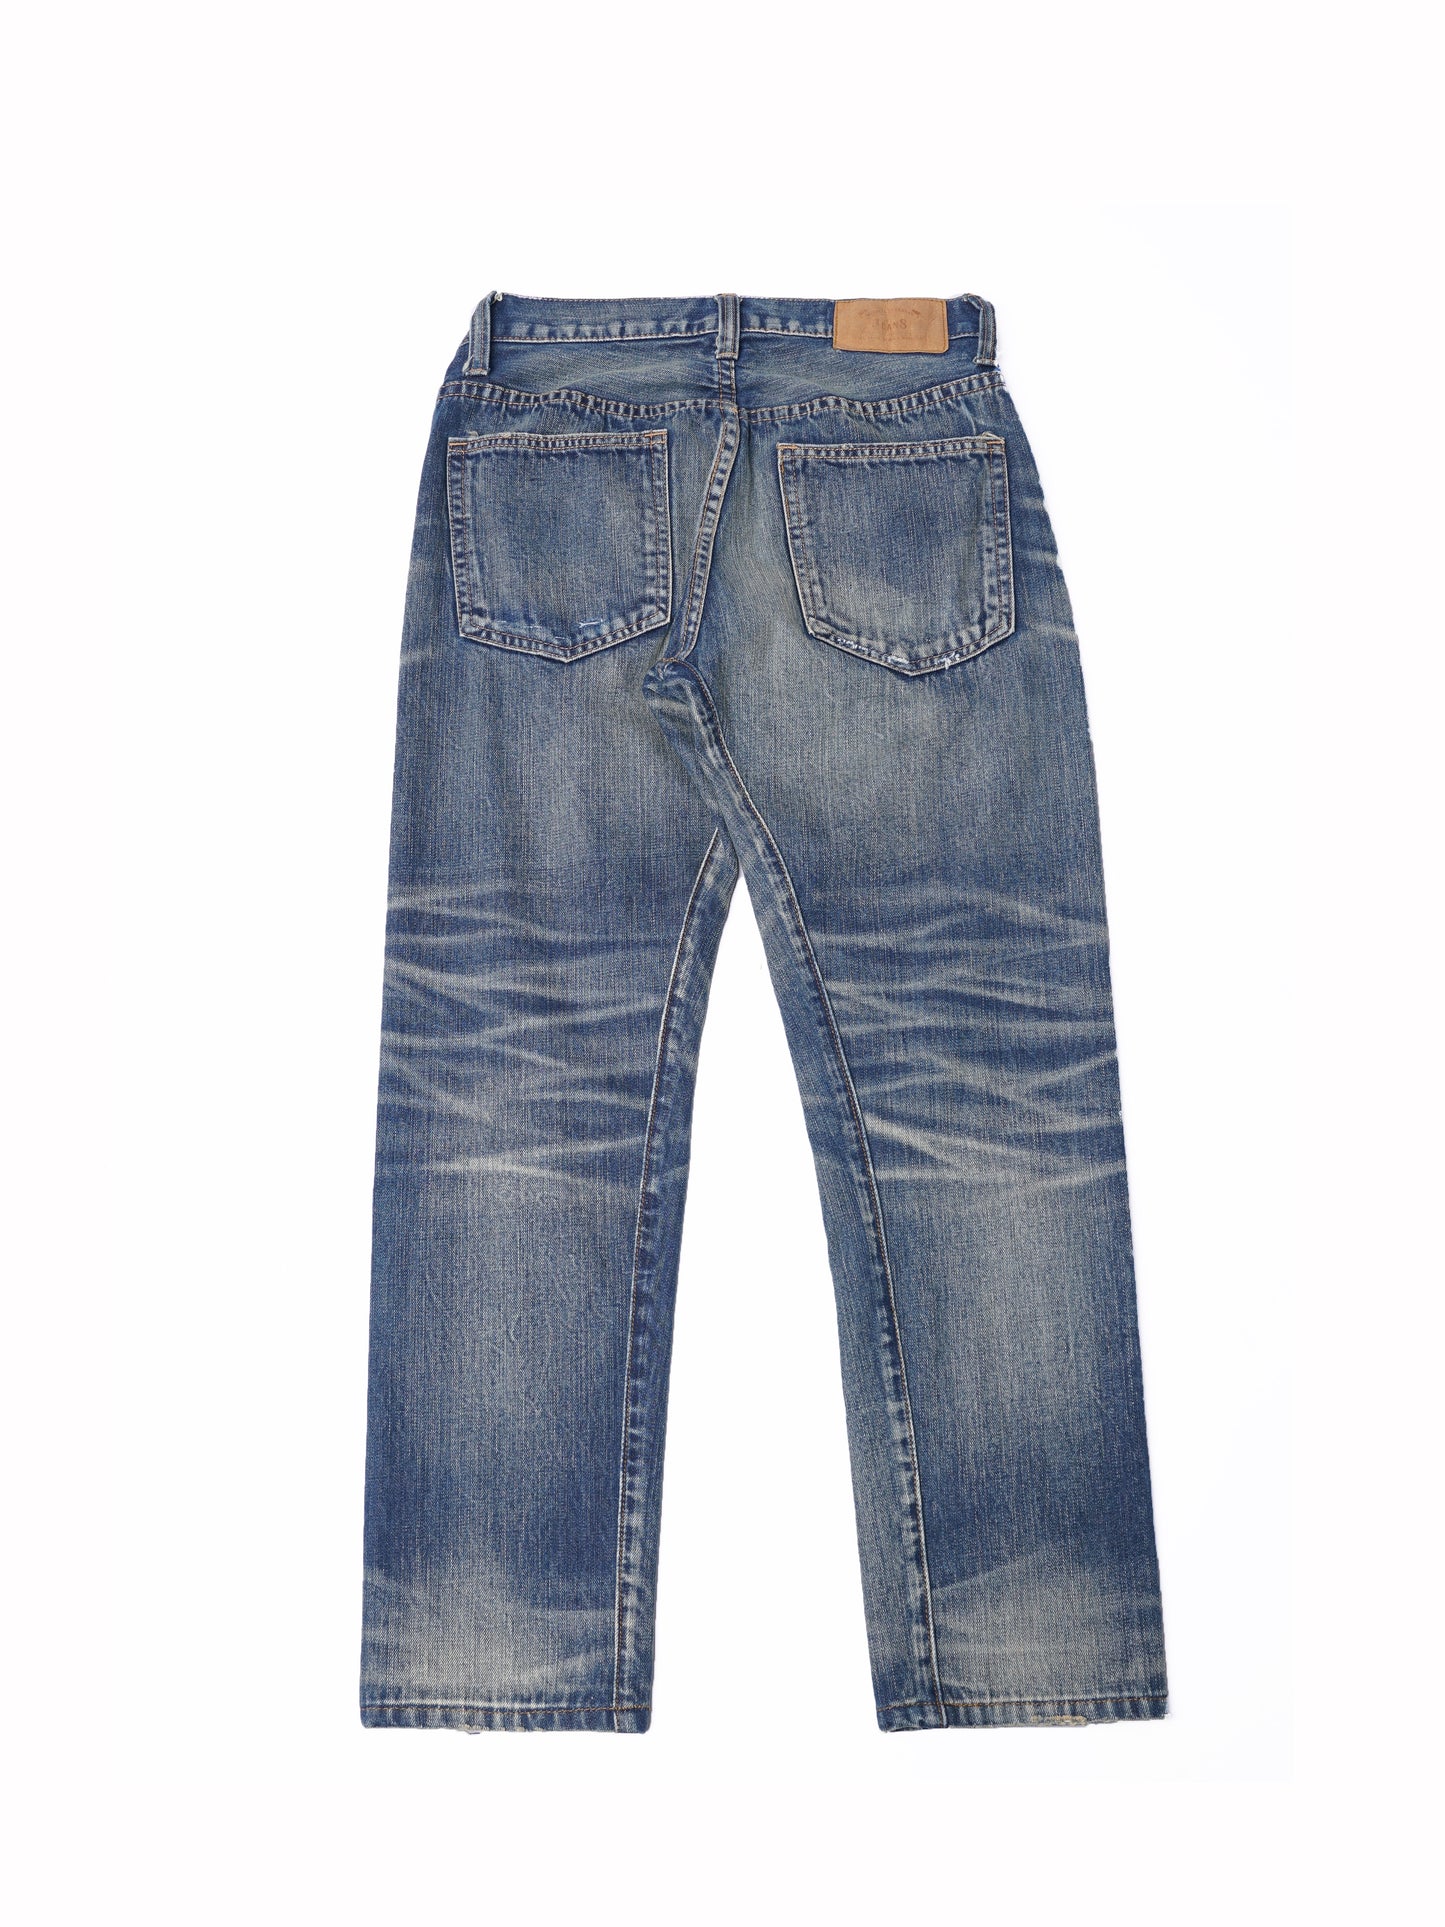 【訂製】RIII 3 Years Vintage Washed Slim Cut Jeans